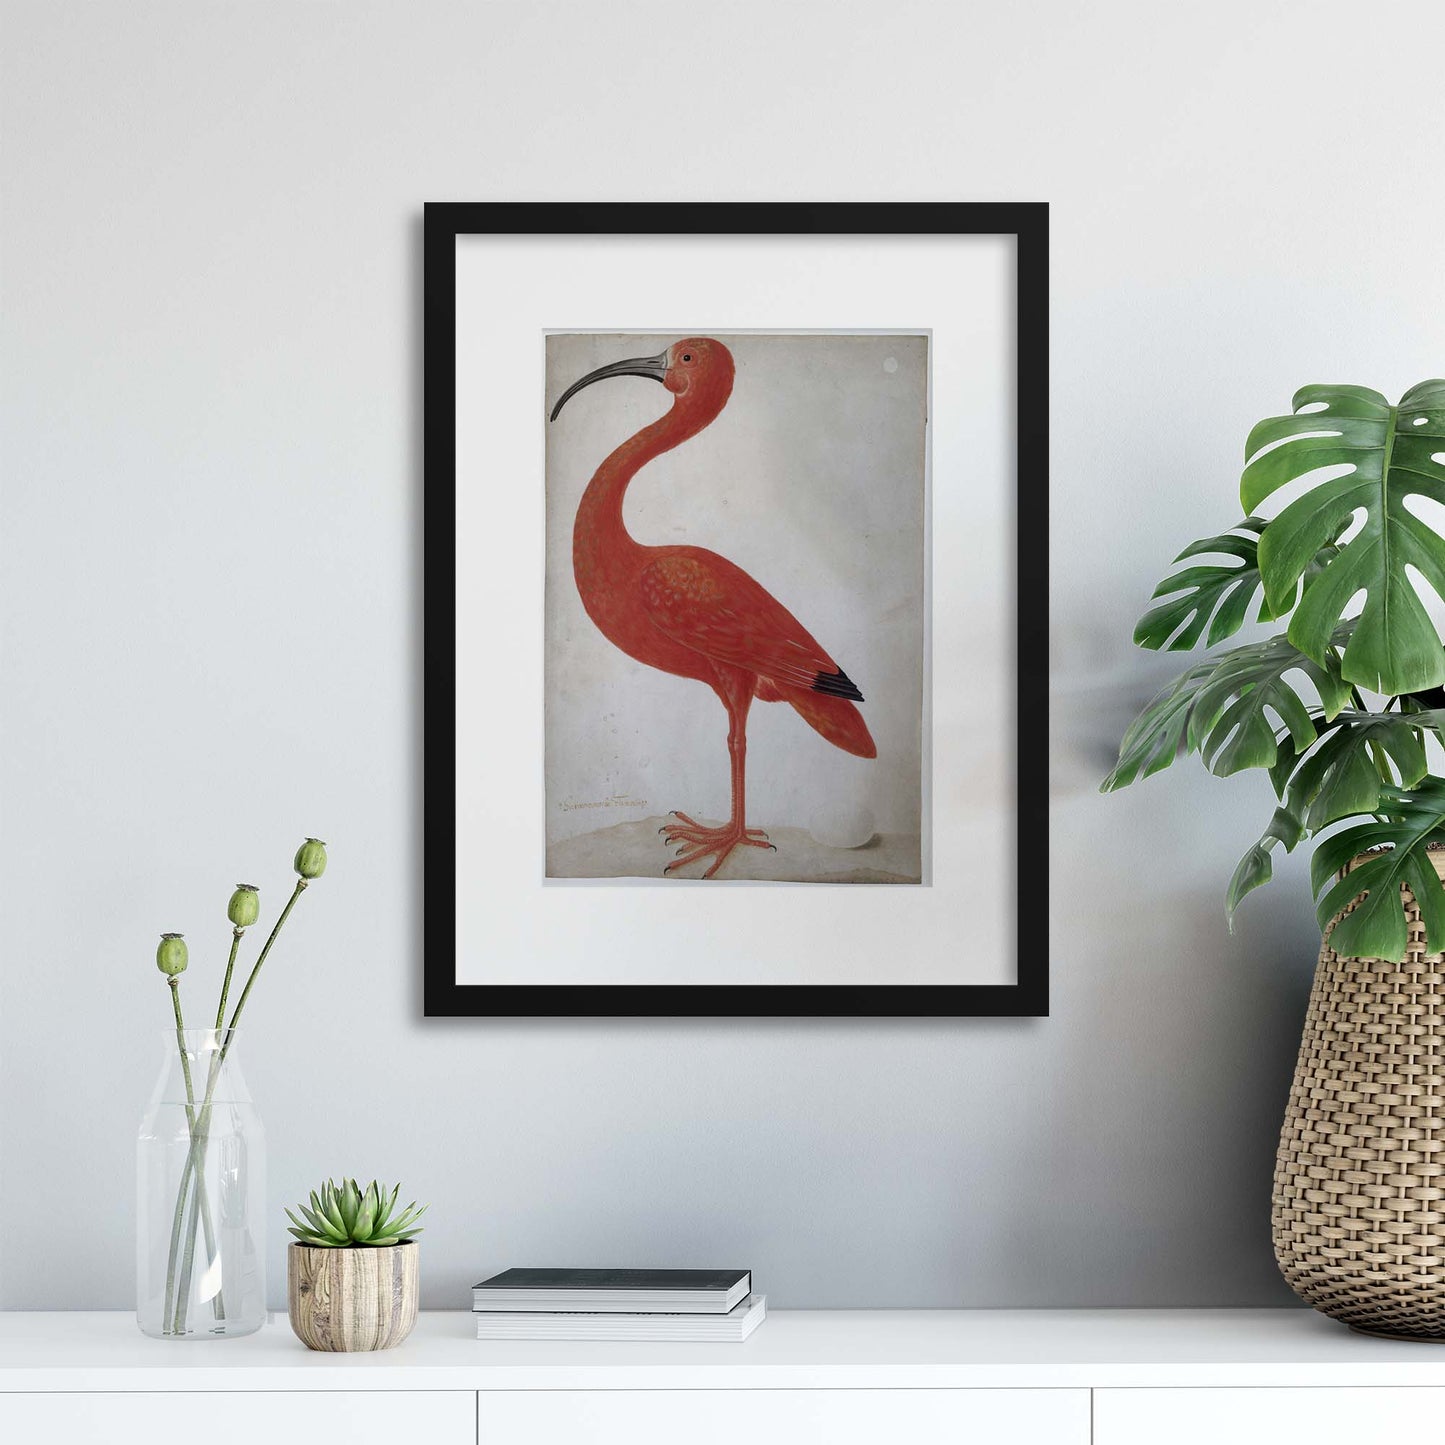 Vintage Illustrations: Exotic Scarlet Ibis Framed Print - USTAD HOME